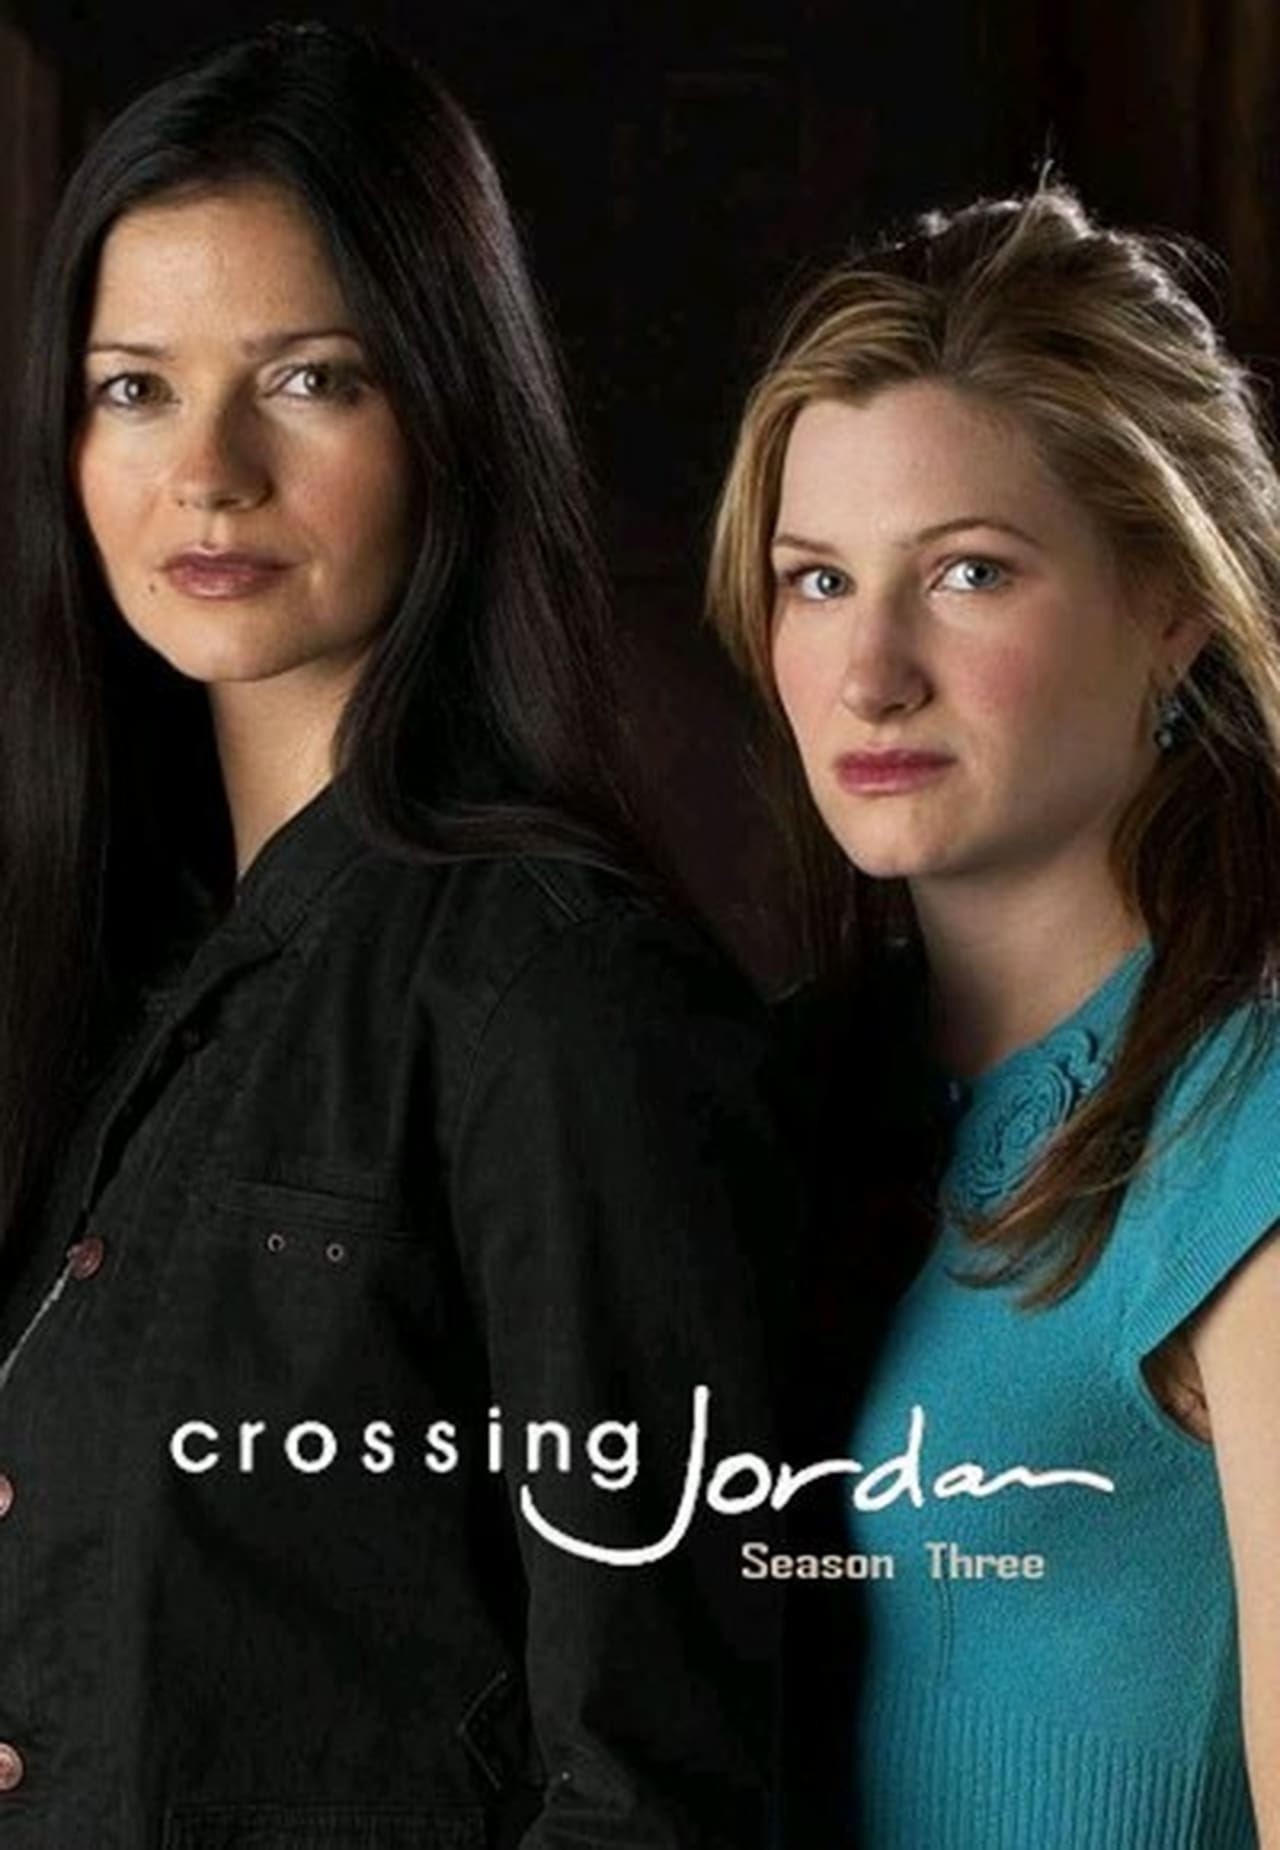 Crossing Jordan Season 3